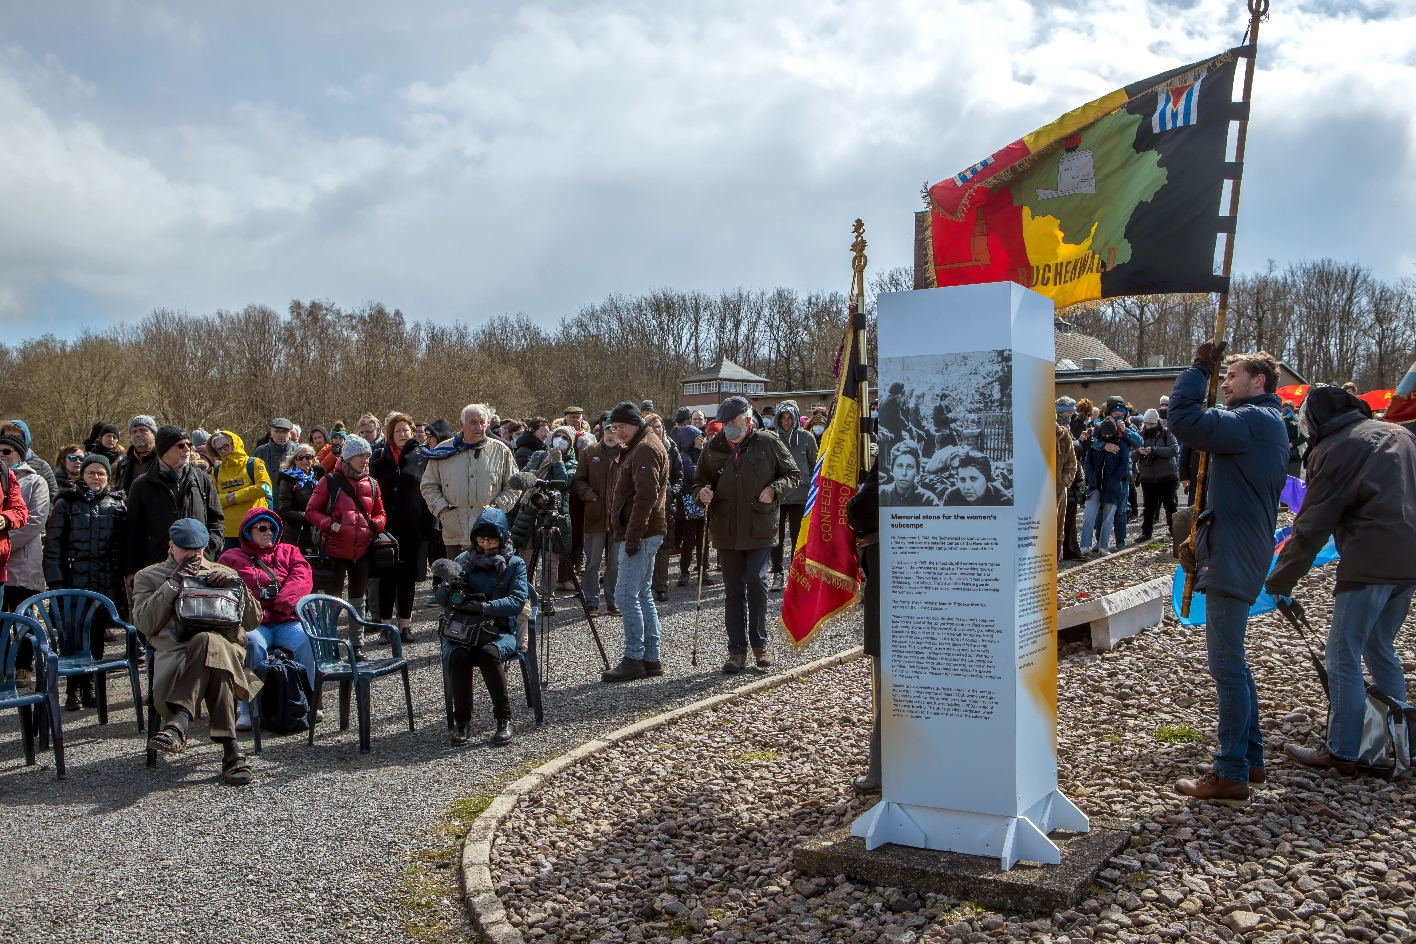 Im Vordergrund des Bildes steht eine weiß-grau-orangene Info-Stele. Rechts neben der Stele steht ein Mann mit einer großen Belgischen Flagge. Im Hintergrund ist eine Menschenmenge zu sehen, die in Richtung der Stele blickt. 